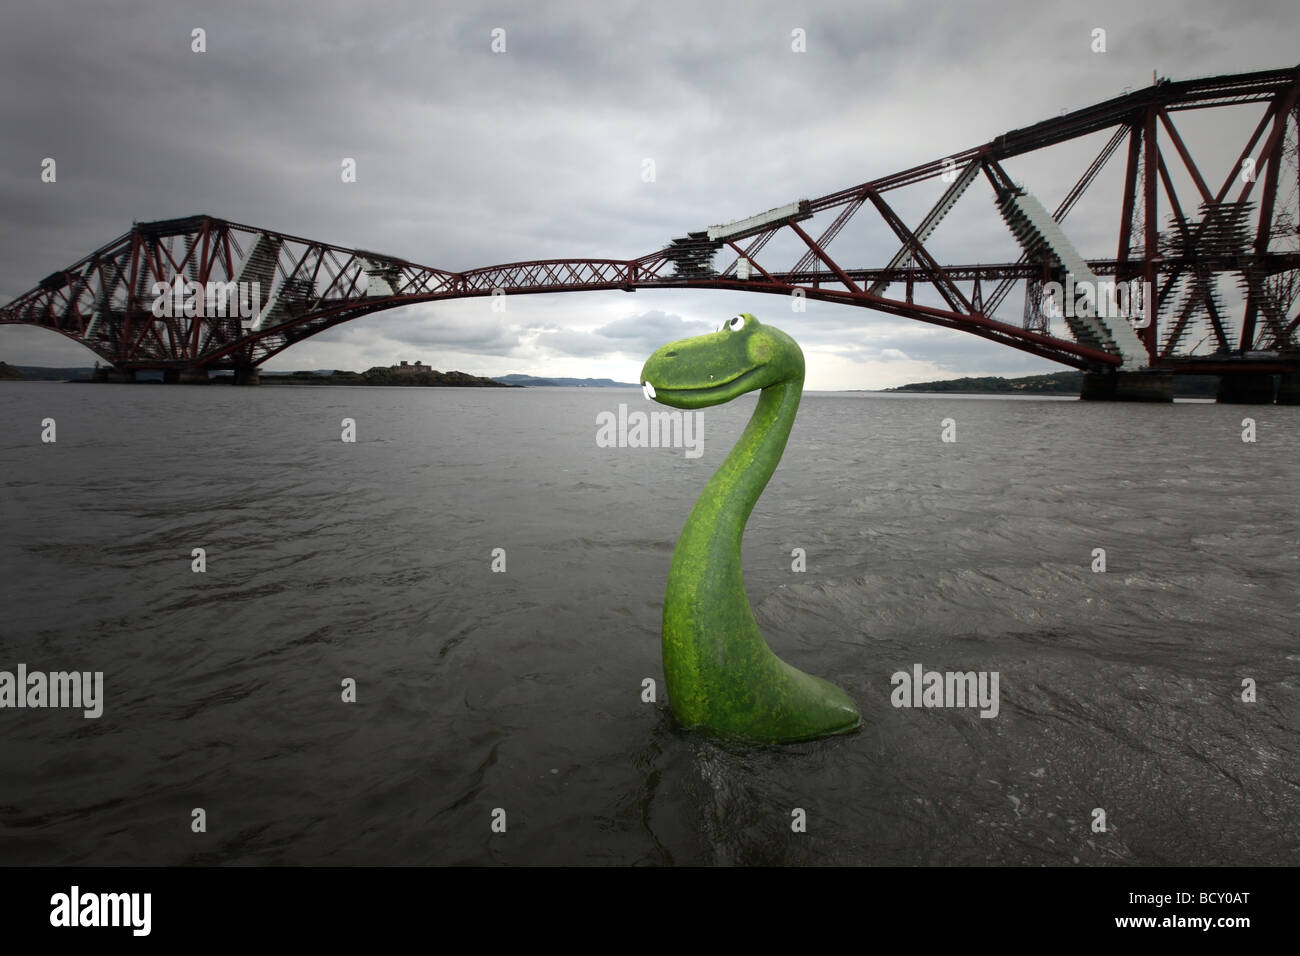 Modèle réaliste du Loch Ness dans l'eau à l'estuaire de la Forth à côté de la Forth Rail Bridge, Edinburgh, Ecosse, Royaume-Uni Banque D'Images